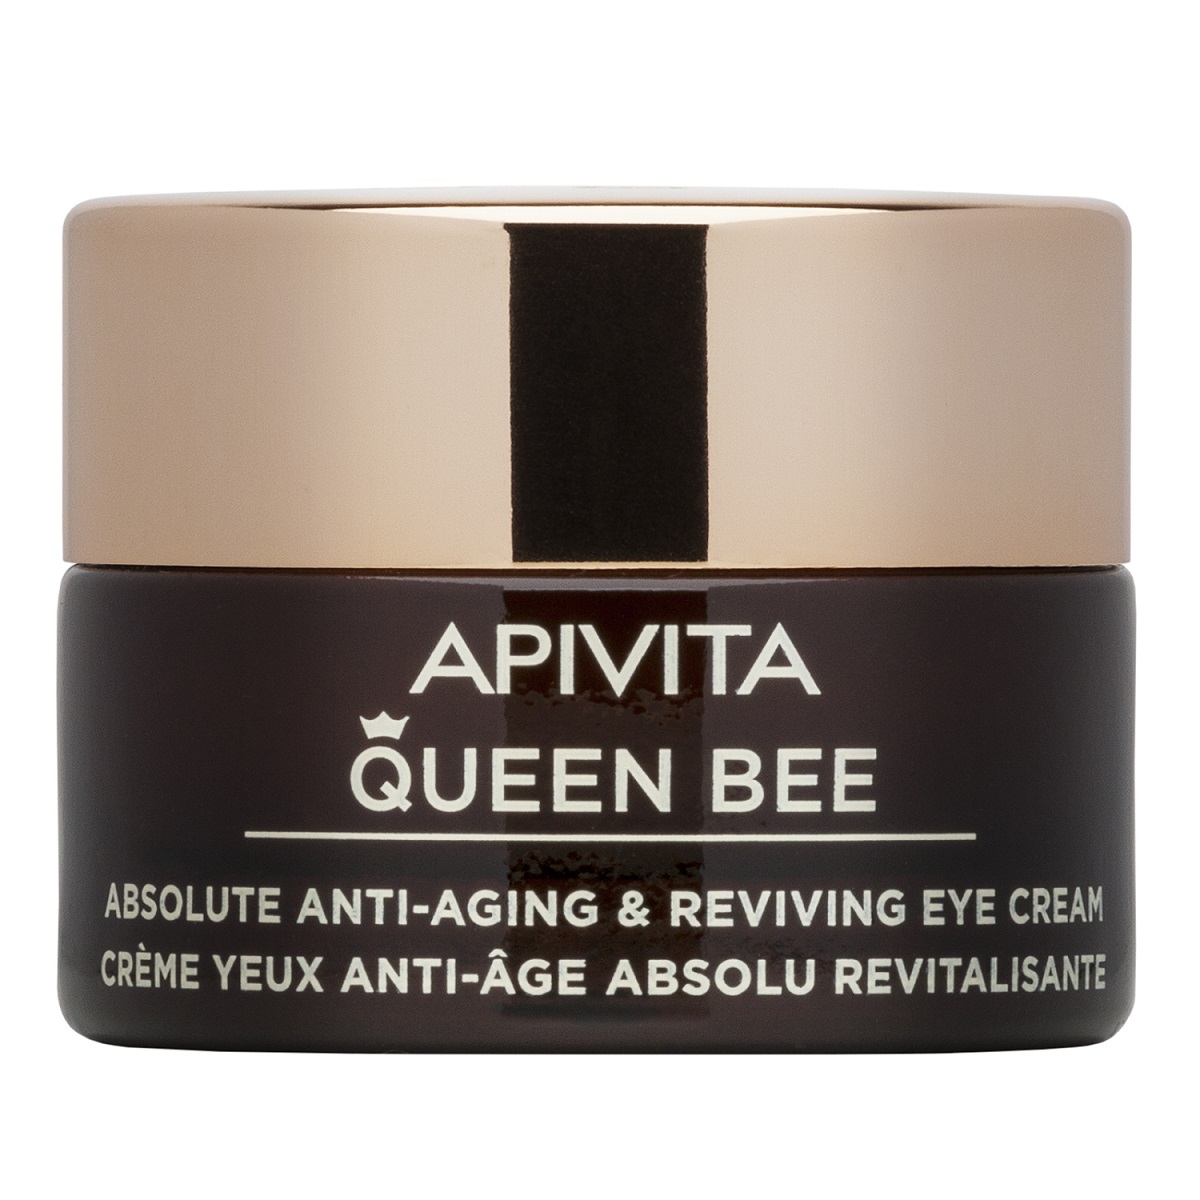 цена Apivita Комплексный антивозрастной восстанавливающий крем для кожи контура глаз, 15 мл (Apivita, Queen Bee)